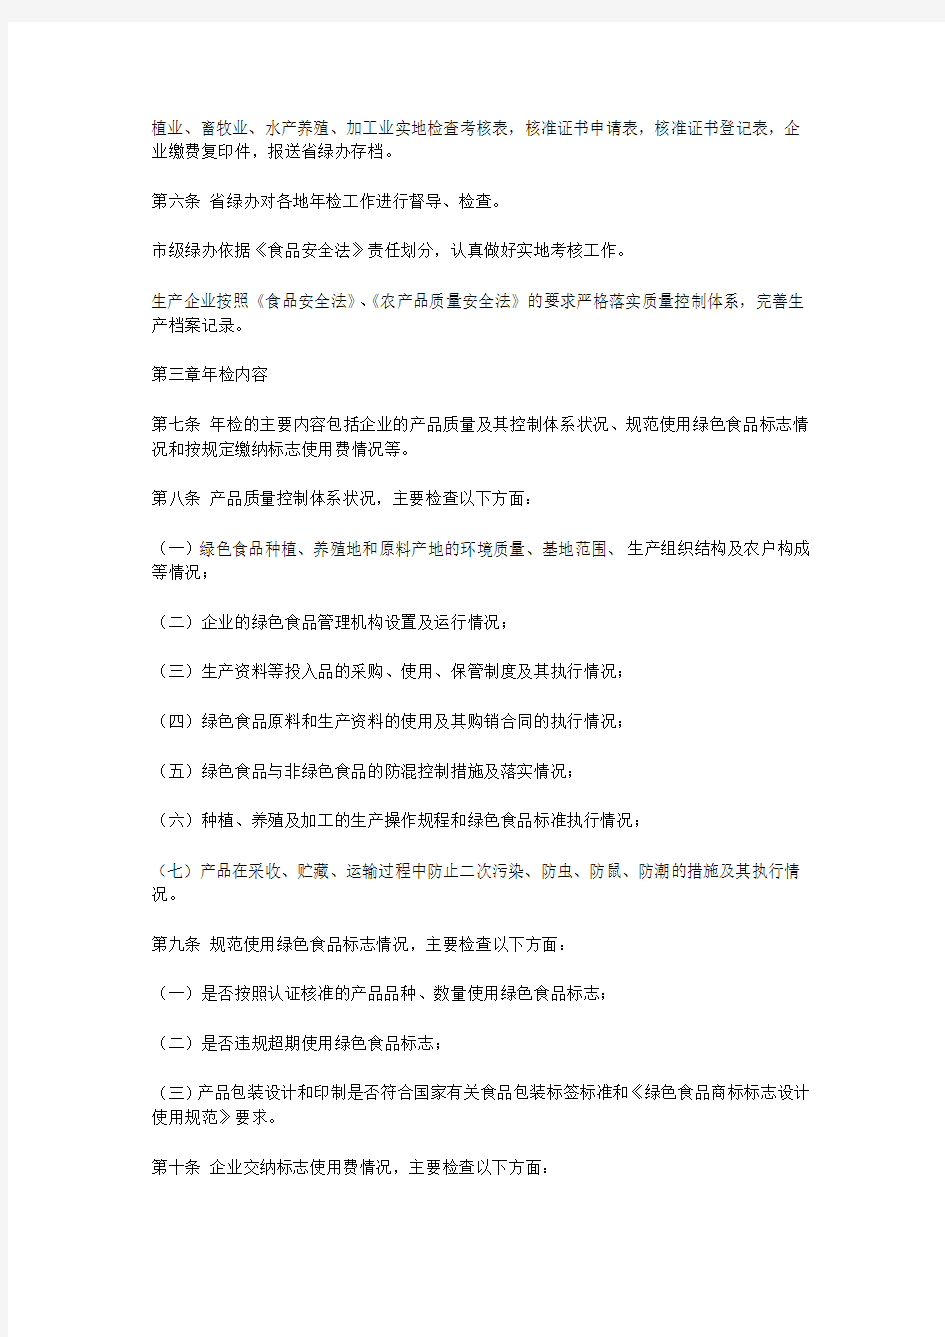 黑龙江省绿色食品年检工作实施办法